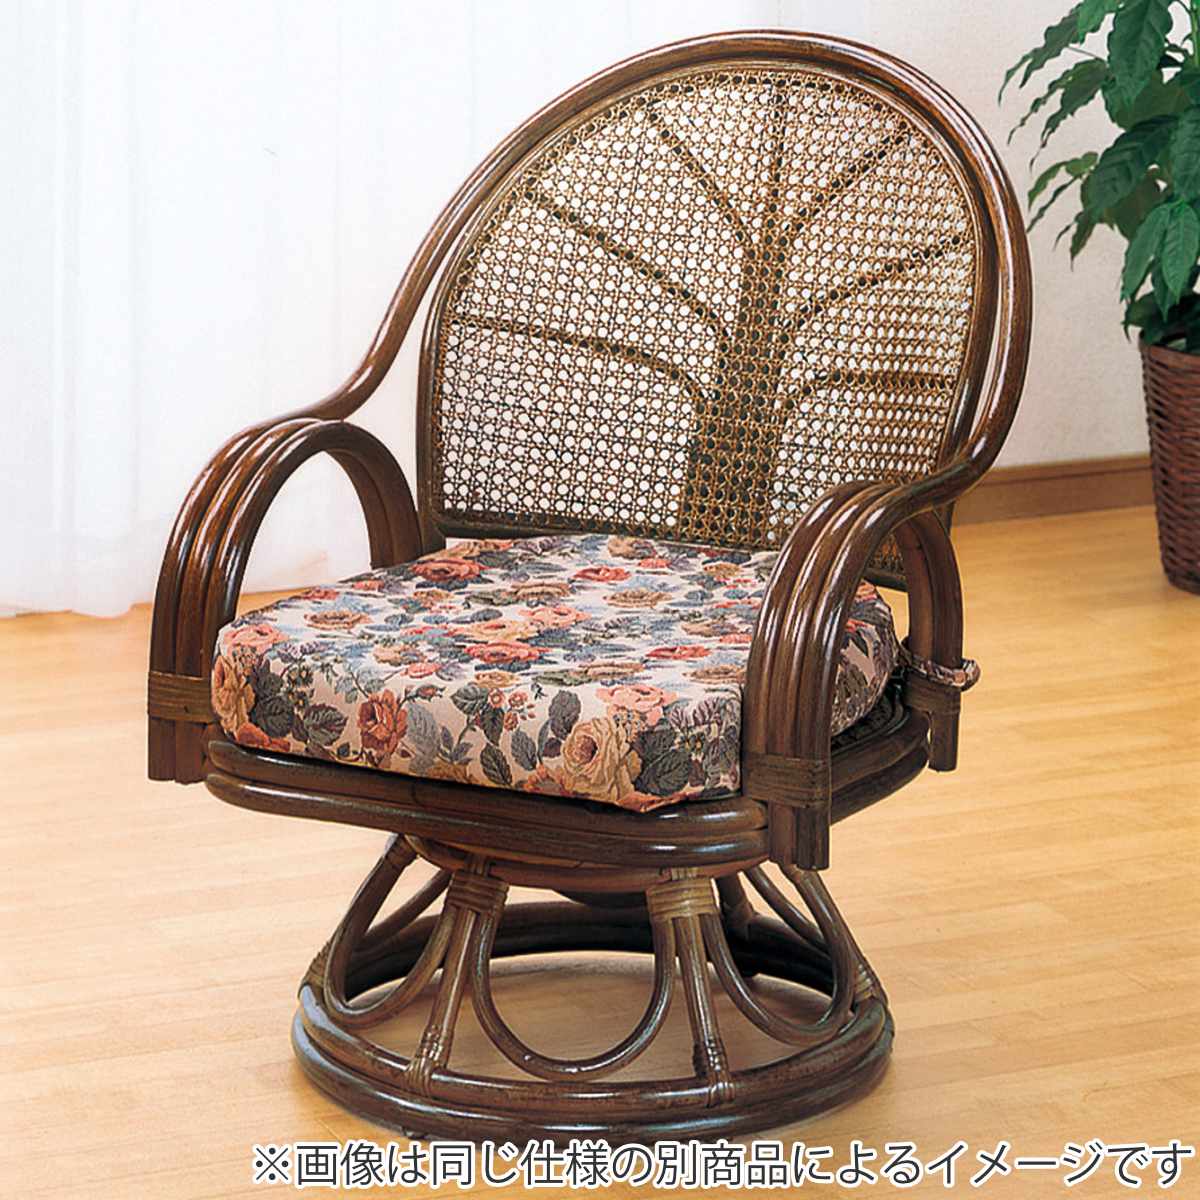 回転式ラタン座椅子 籐製品 アジアン家具 チェアザイス - 座椅子